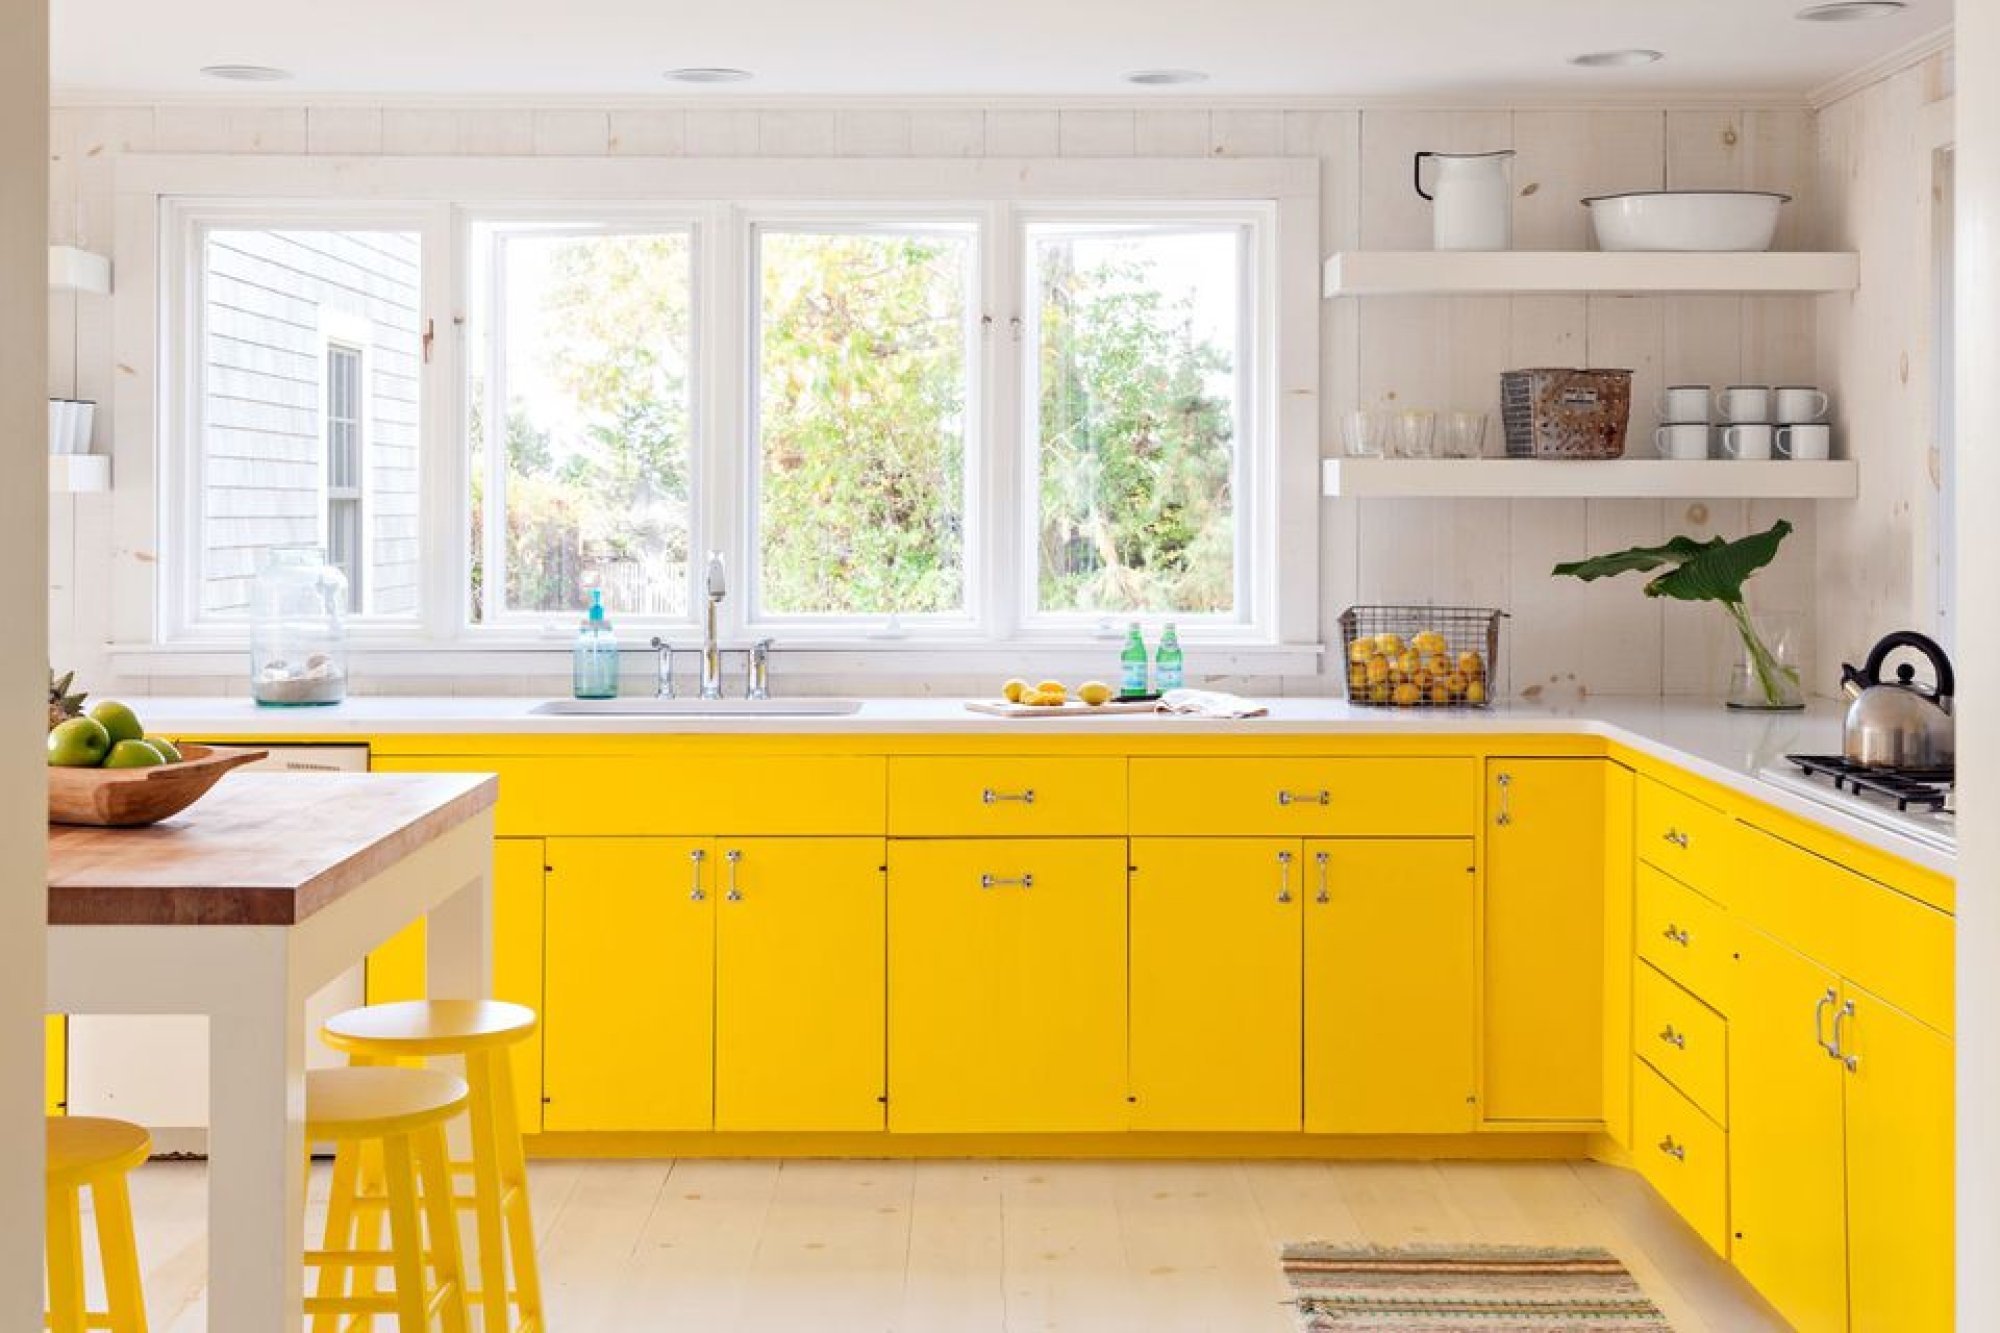 Купить желтую кухню. Желтая кухня икеа. Кухня в желтом цвете. Желтый цвет в интерьере кухни. Желтая кухня в интерьере.